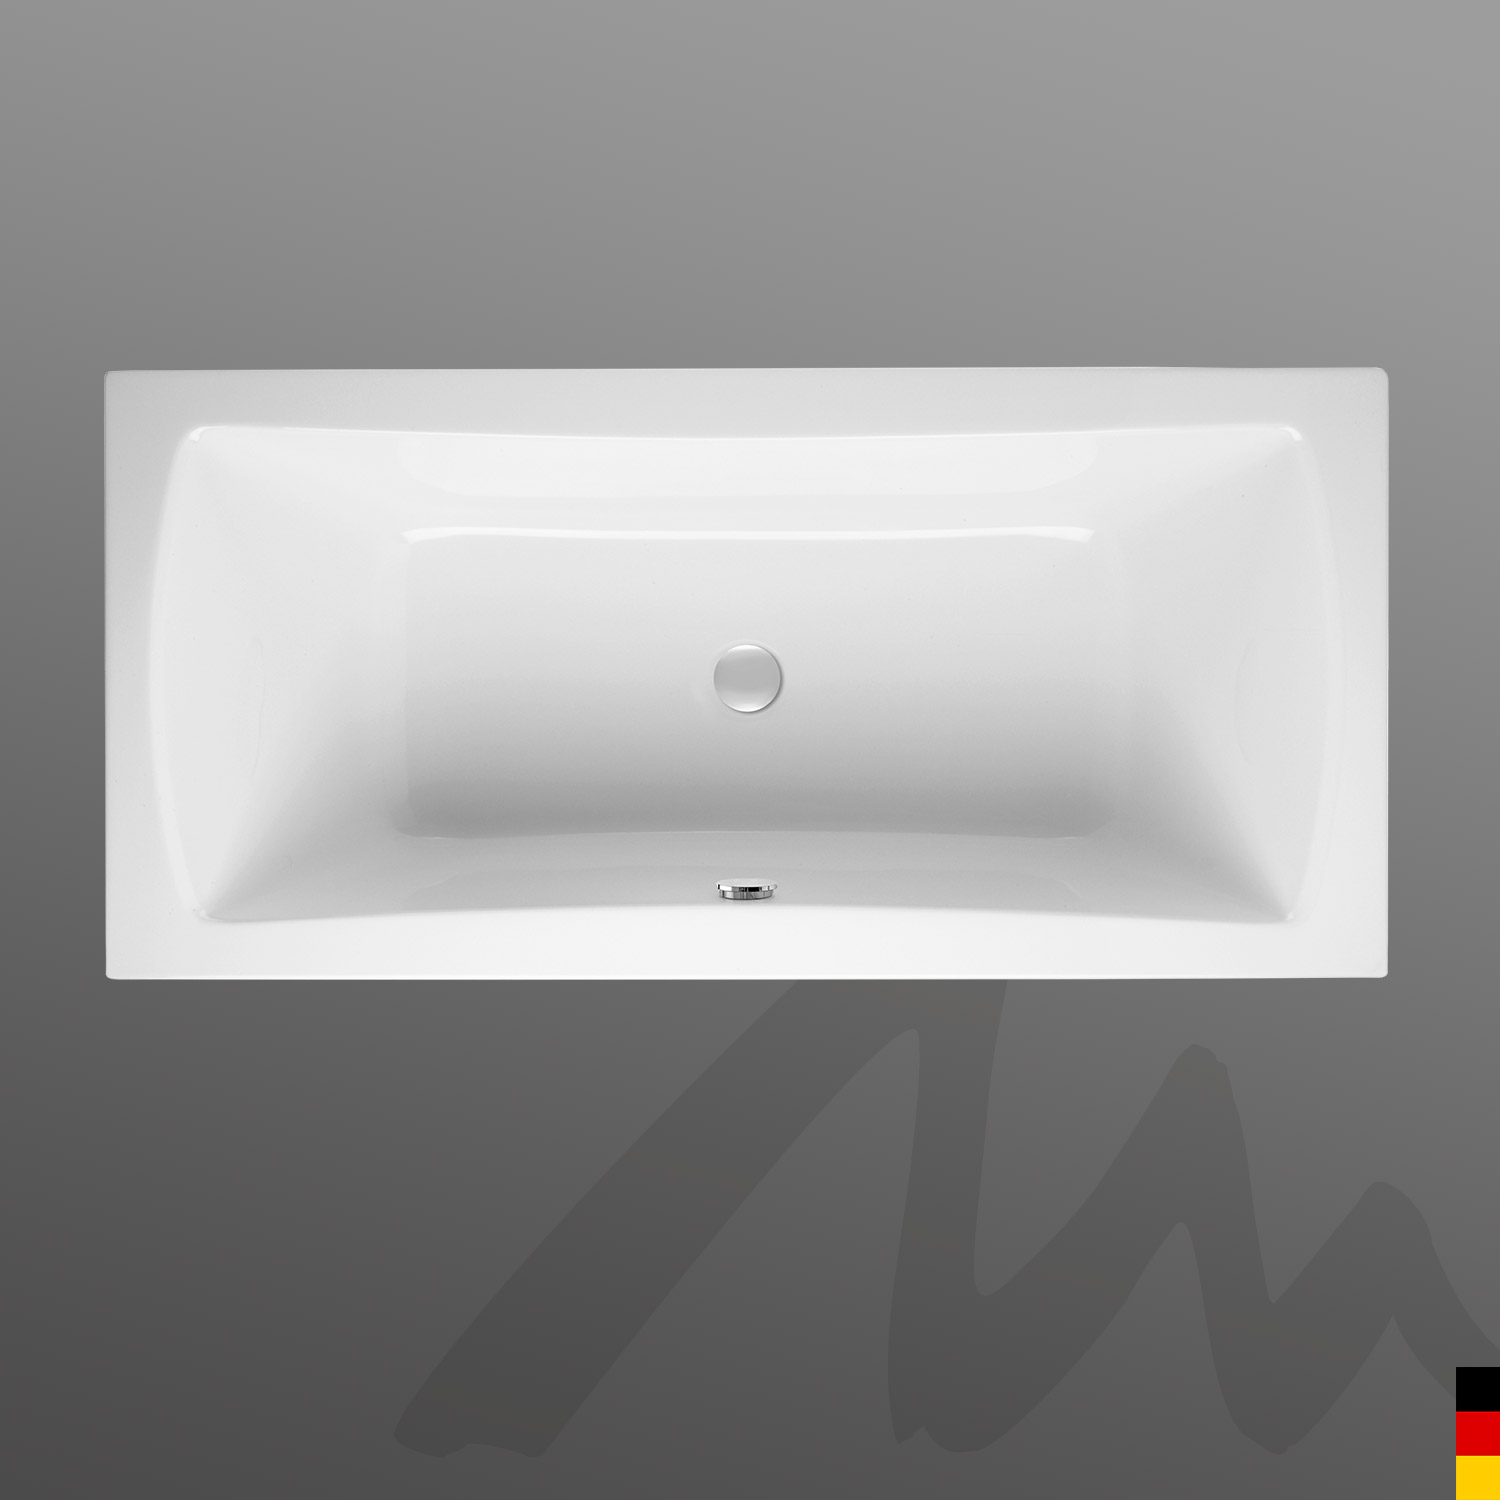 Mauersberger Badewanne Rechteck Jucunda 170/80 duo  170x80x46cm  Farbe:rein-weiß